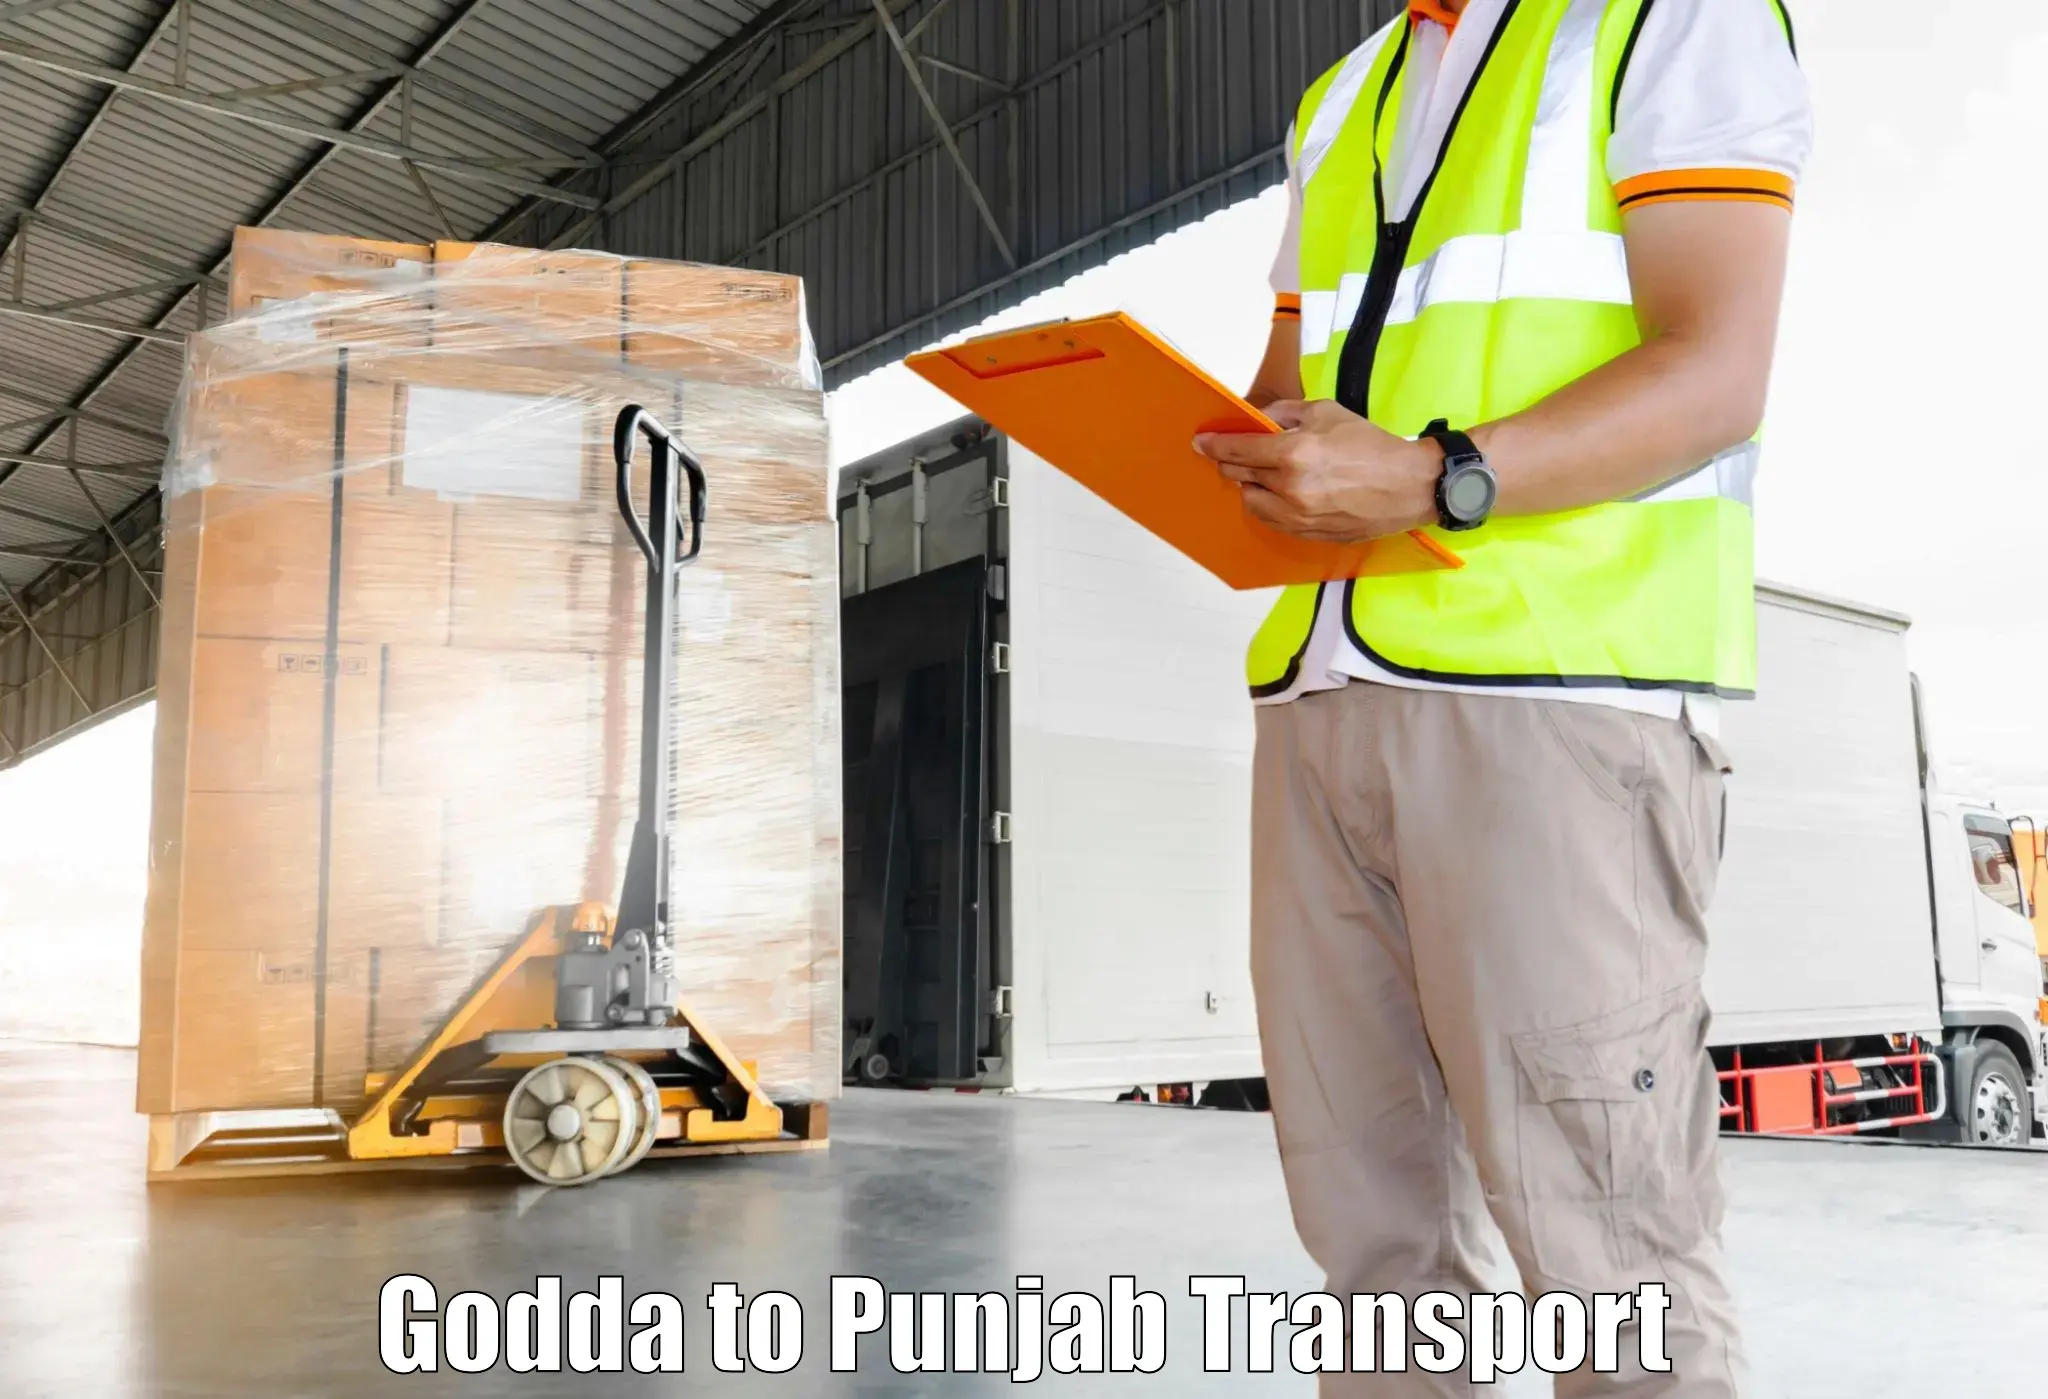 Two wheeler transport services Godda to Talwara